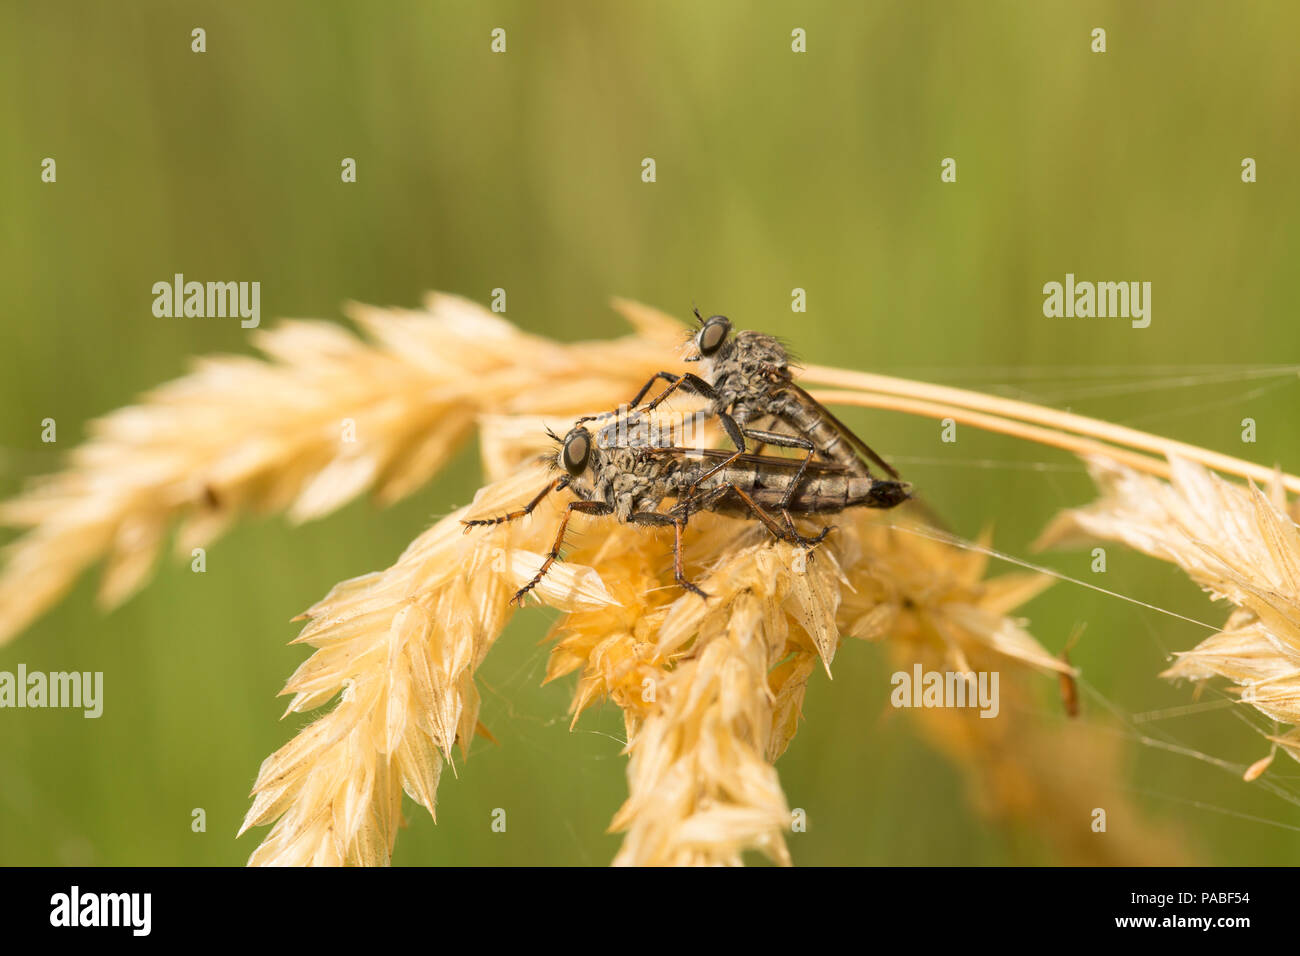 Une paire de mouches volantes d'accouplement, commander Diptera, pendant les temps chauds en 2018. Les mouches volées sont prédateurs et se nourrissent d'autres insectes. Dorset Angleterre Royaume-Uni GB Banque D'Images